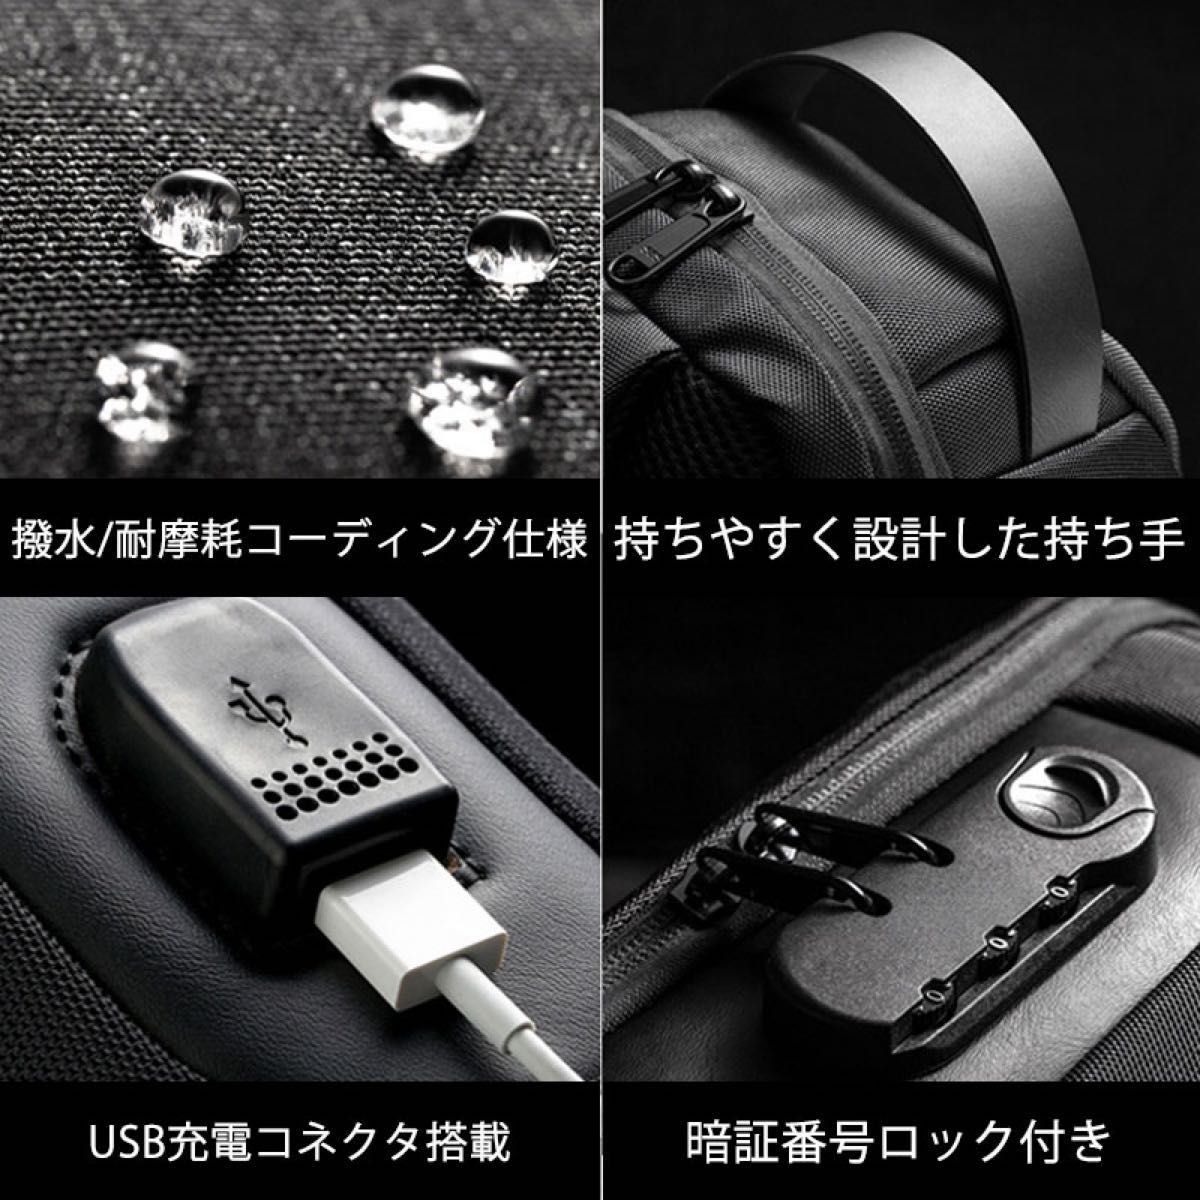 ボディバッグ ワンショルダーバッグ USBポート 斜め掛けバッグ メンズバッグ 防水大容量 盗難防止 USB充電 ショルダーバッグ